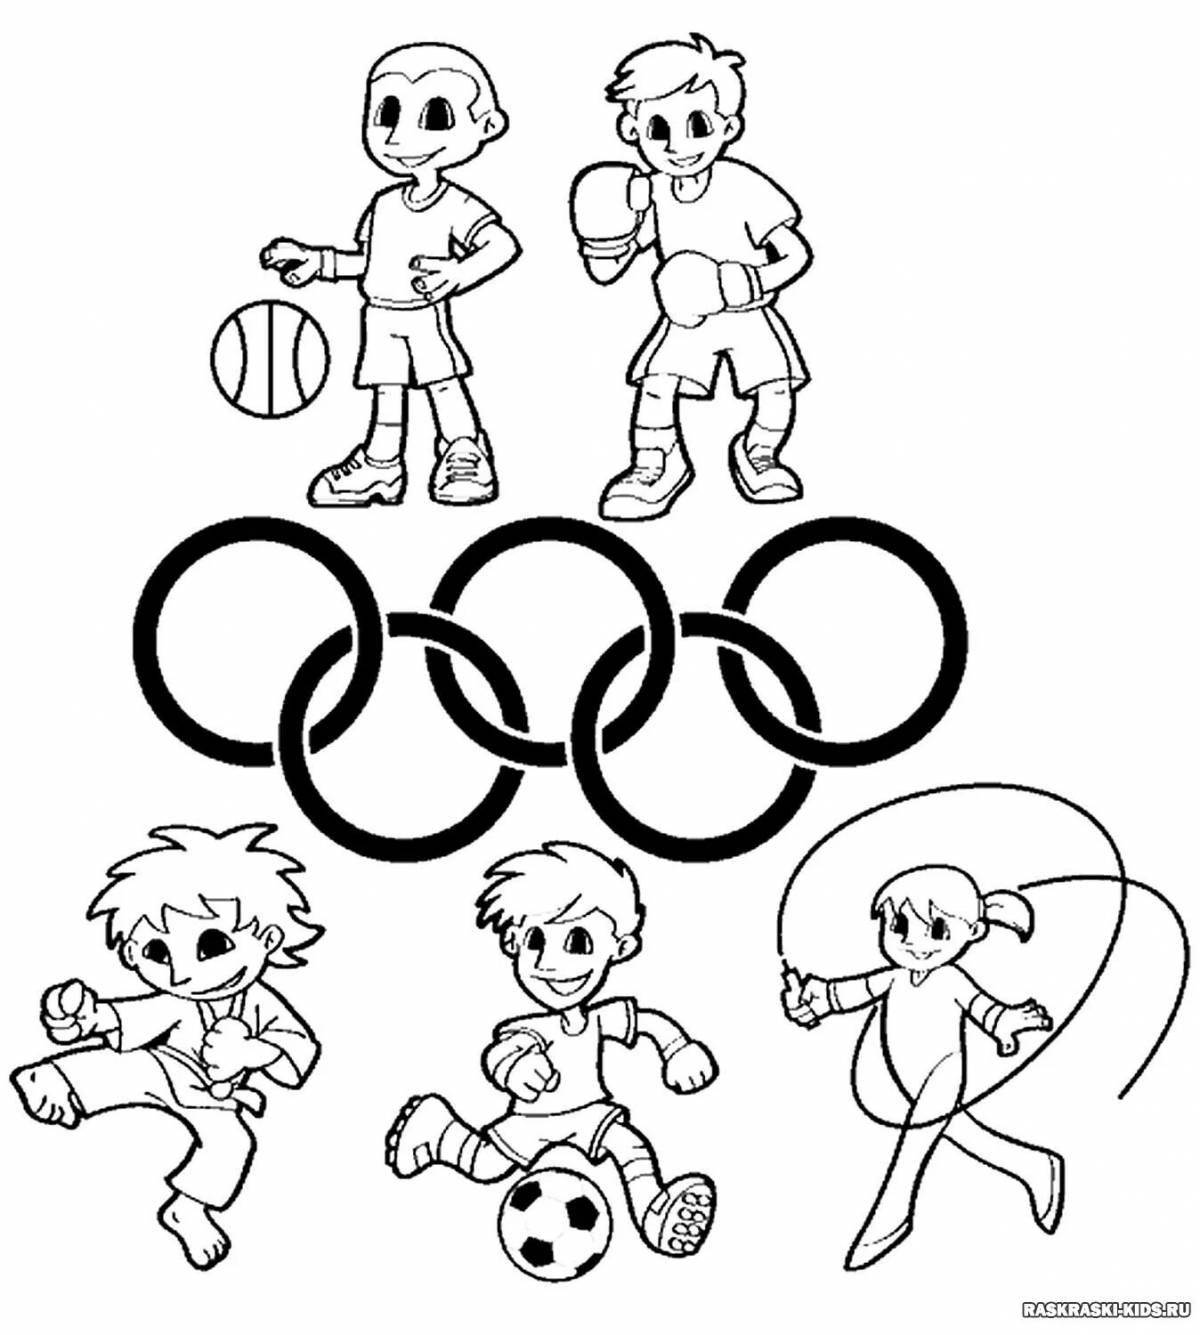 Веселая раскраска олимпийские игры для детей